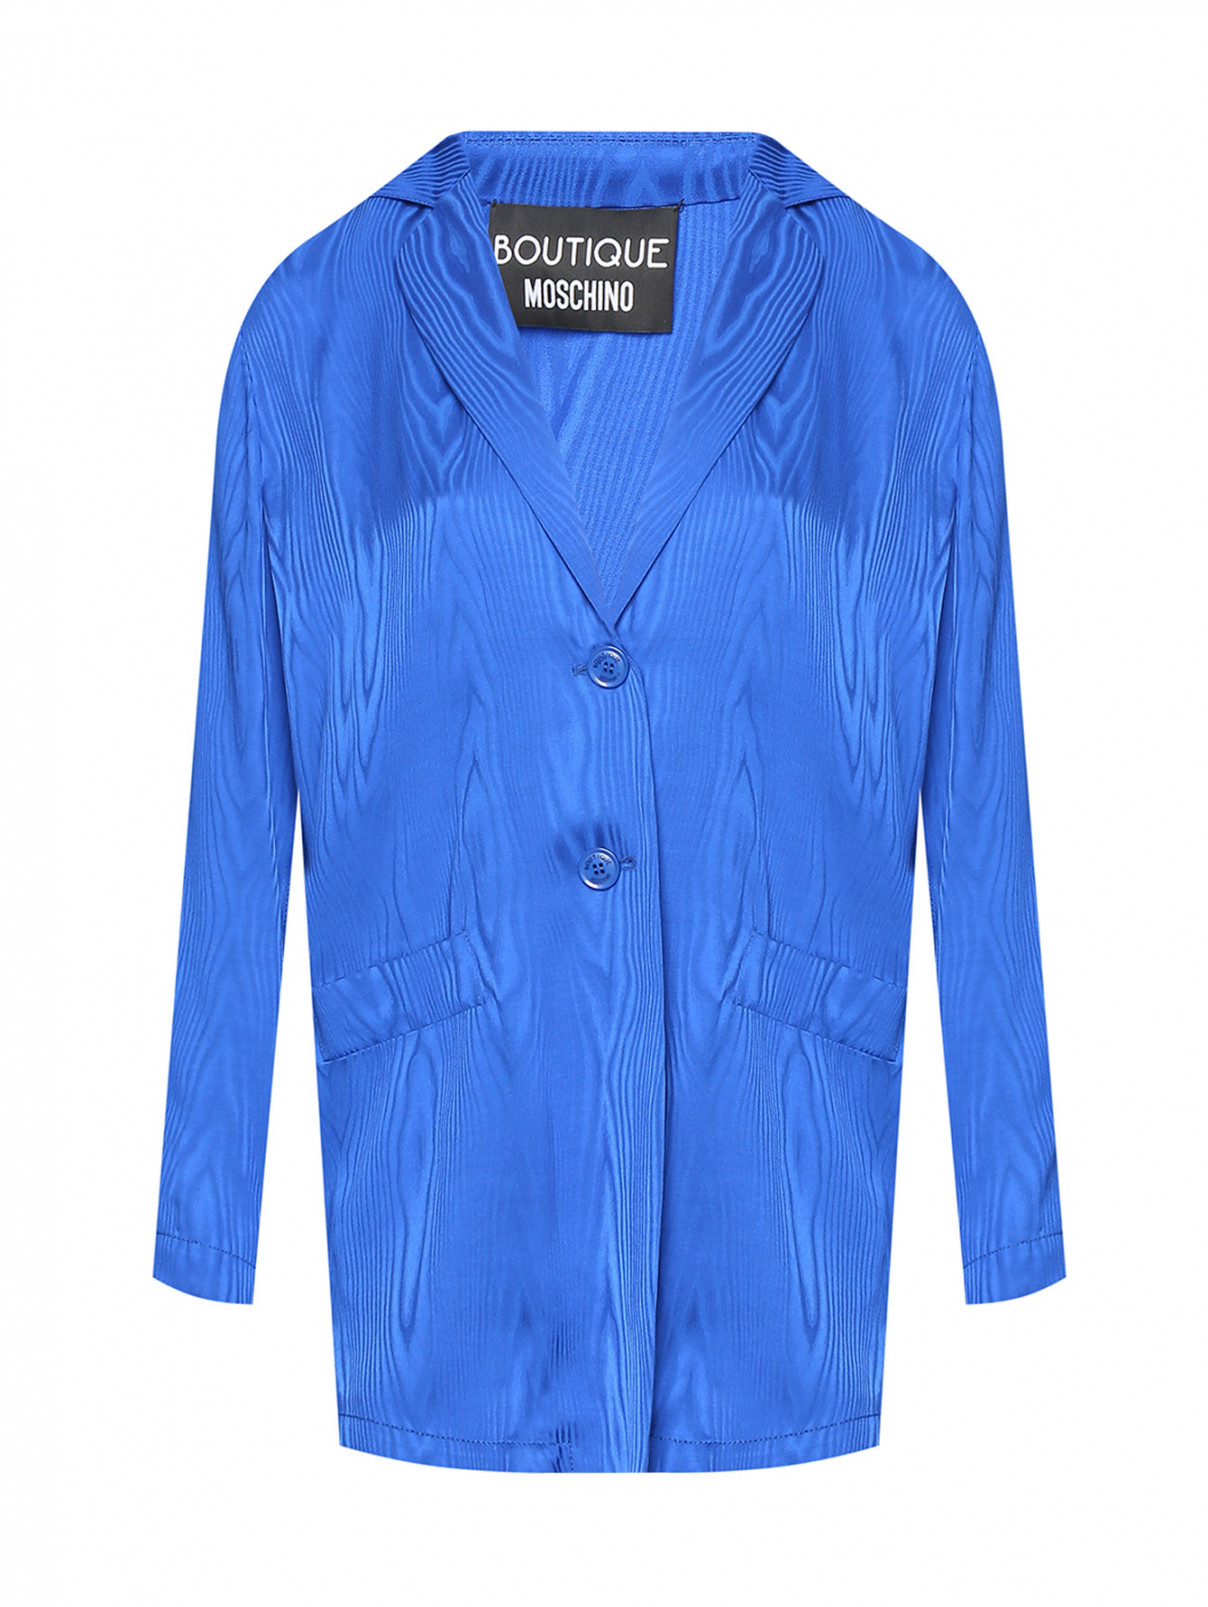 Жакет на пуговицах с узором Moschino Boutique  –  Общий вид  – Цвет:  Синий